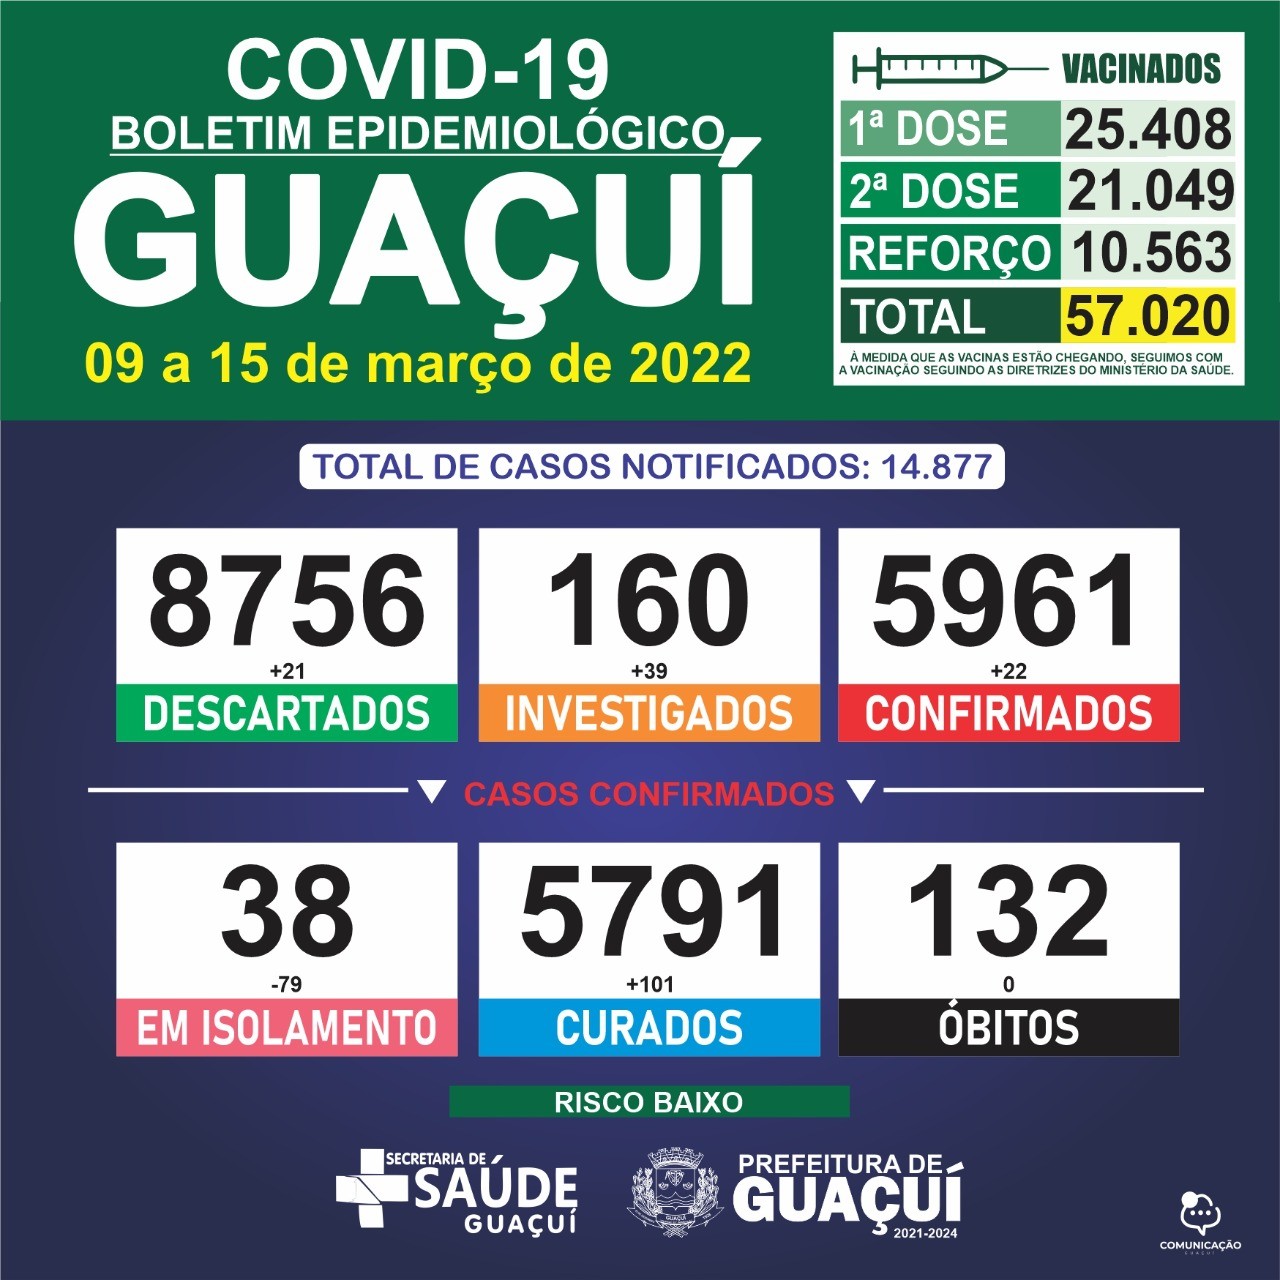 Boletim Epidemiológico de 09 a 15 de março: Guaçuí registra 22 casos confirmados e 101 curados